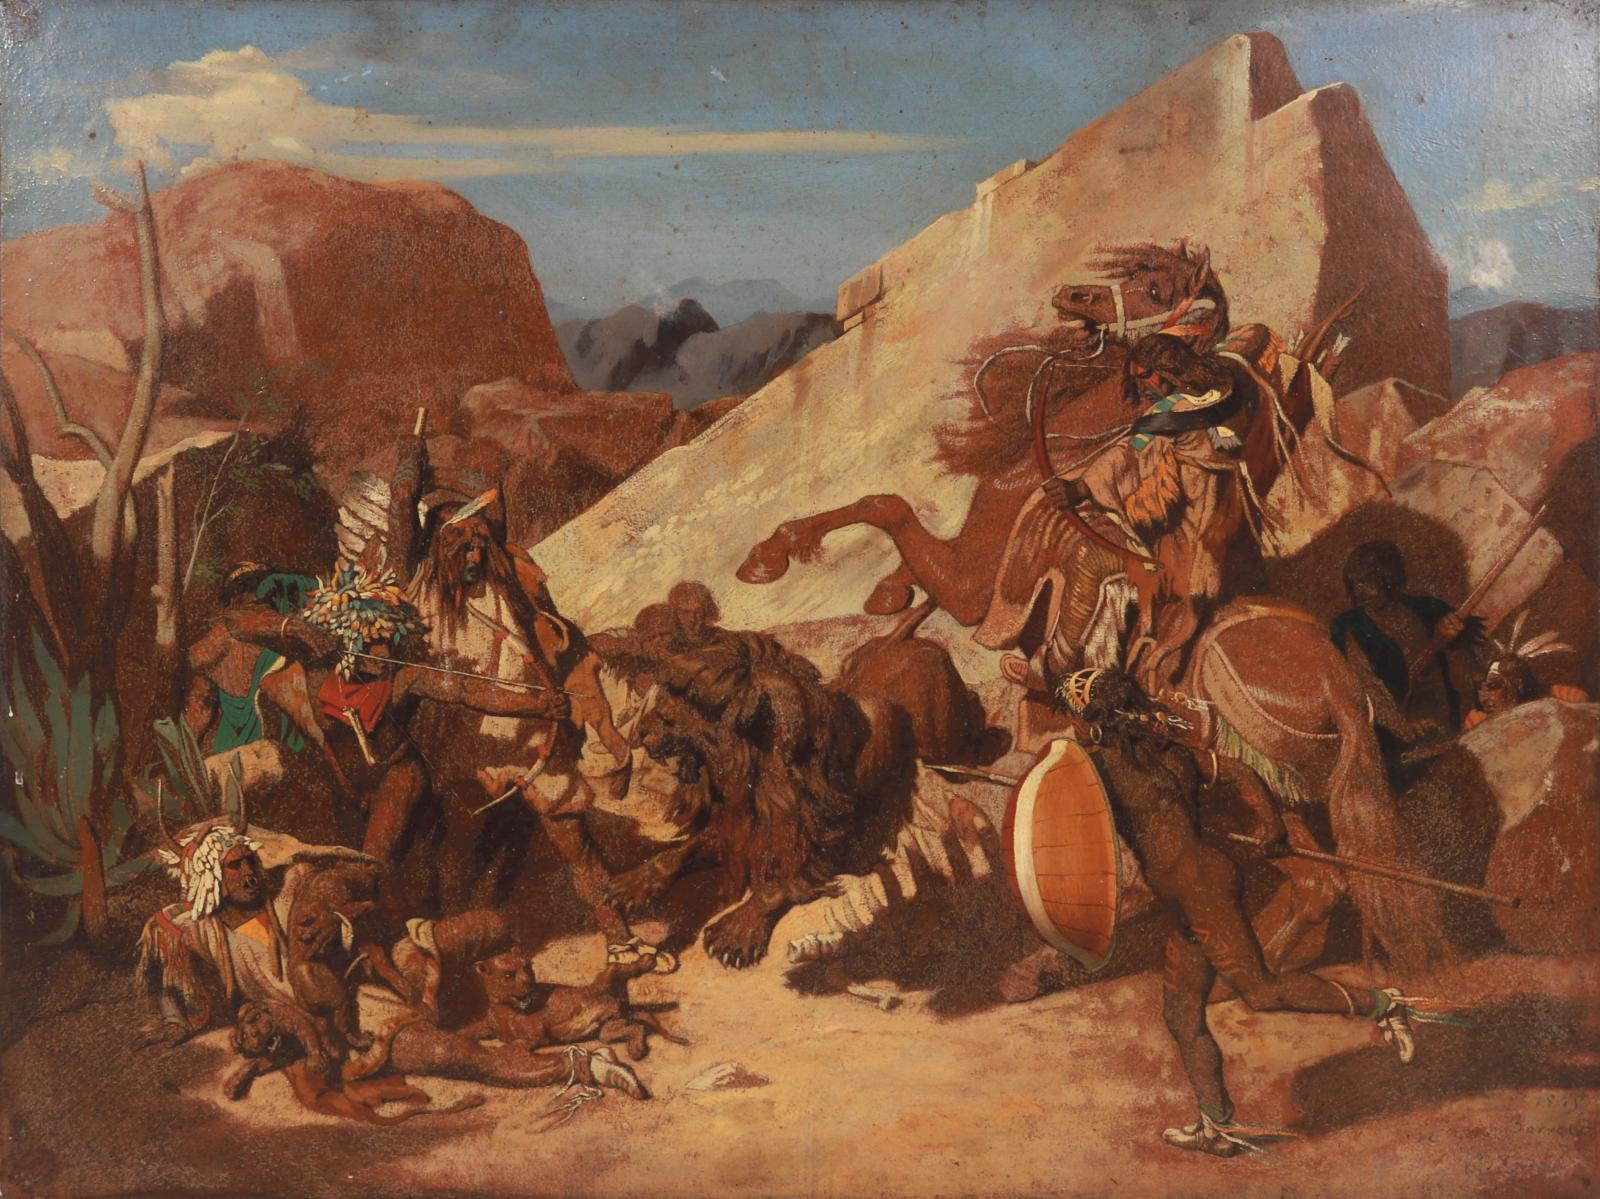 Les Indiens vus par Jean-Léon Gérôme